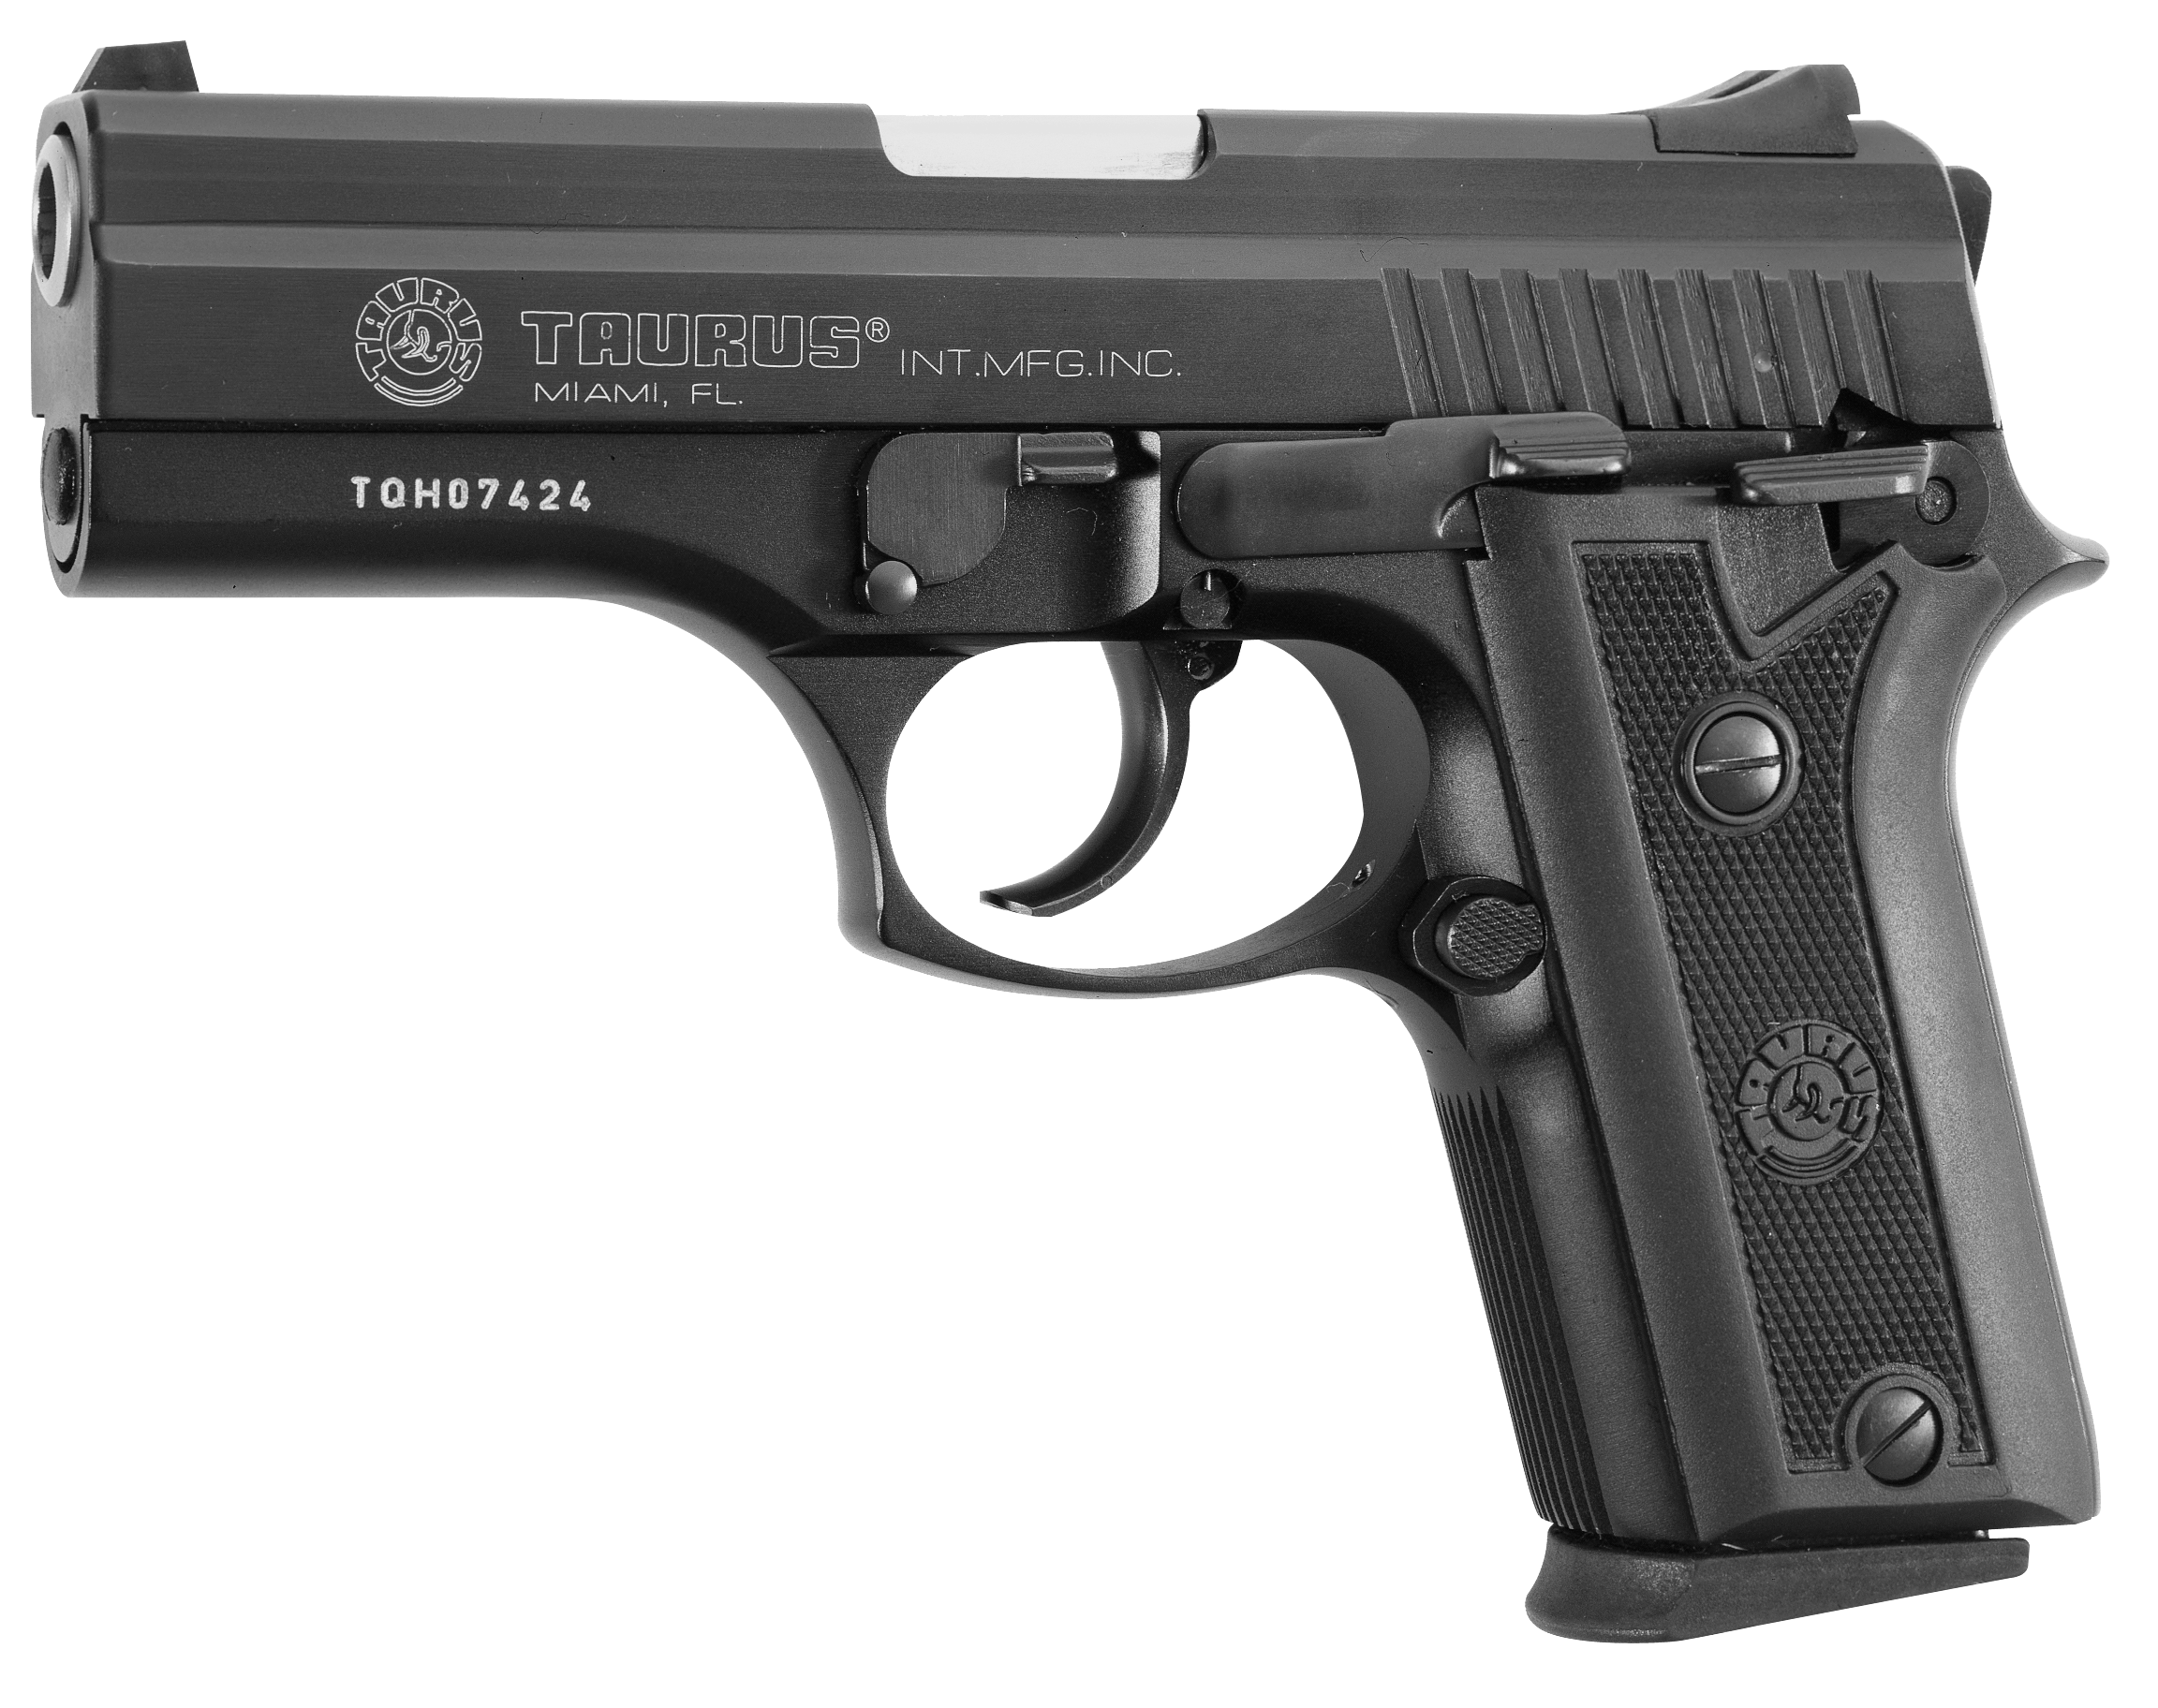 taurus-international-mfg-co-pt-911-gun-values-by-gun-digest